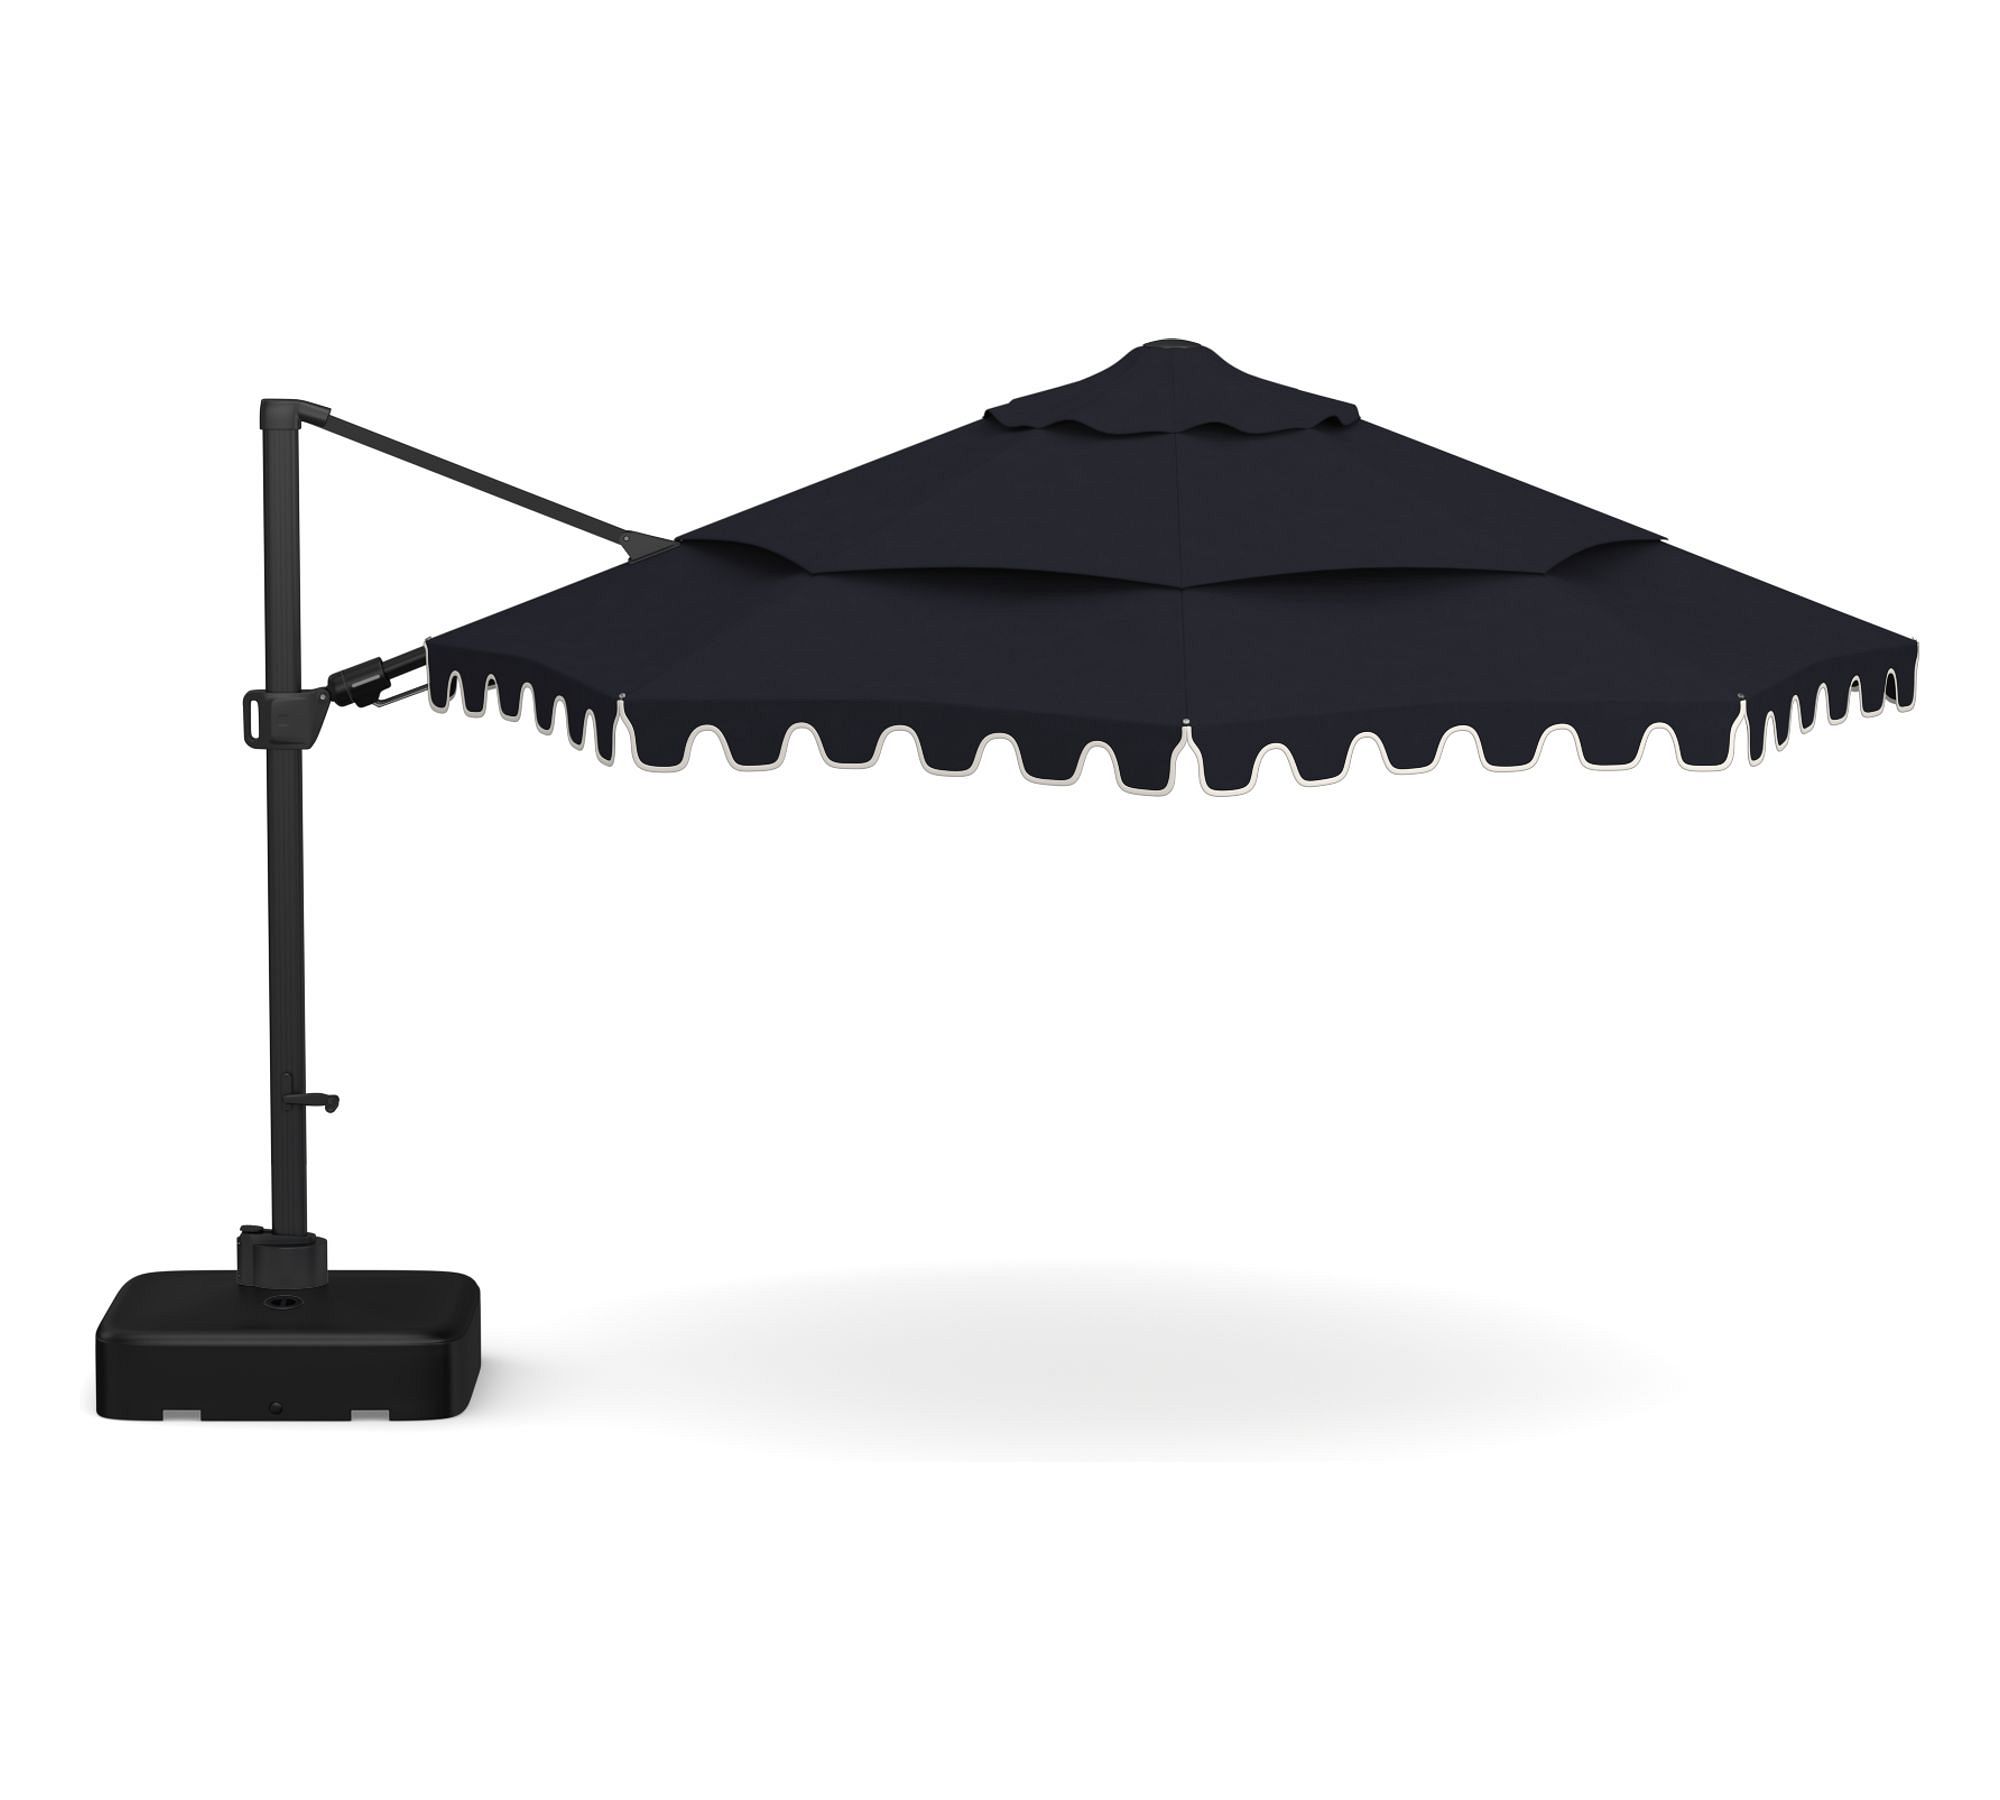 Premium 13' Round Portofino Cantilever Outdoor Patio Umbrella - Rustproof Aluminum Frame with Base